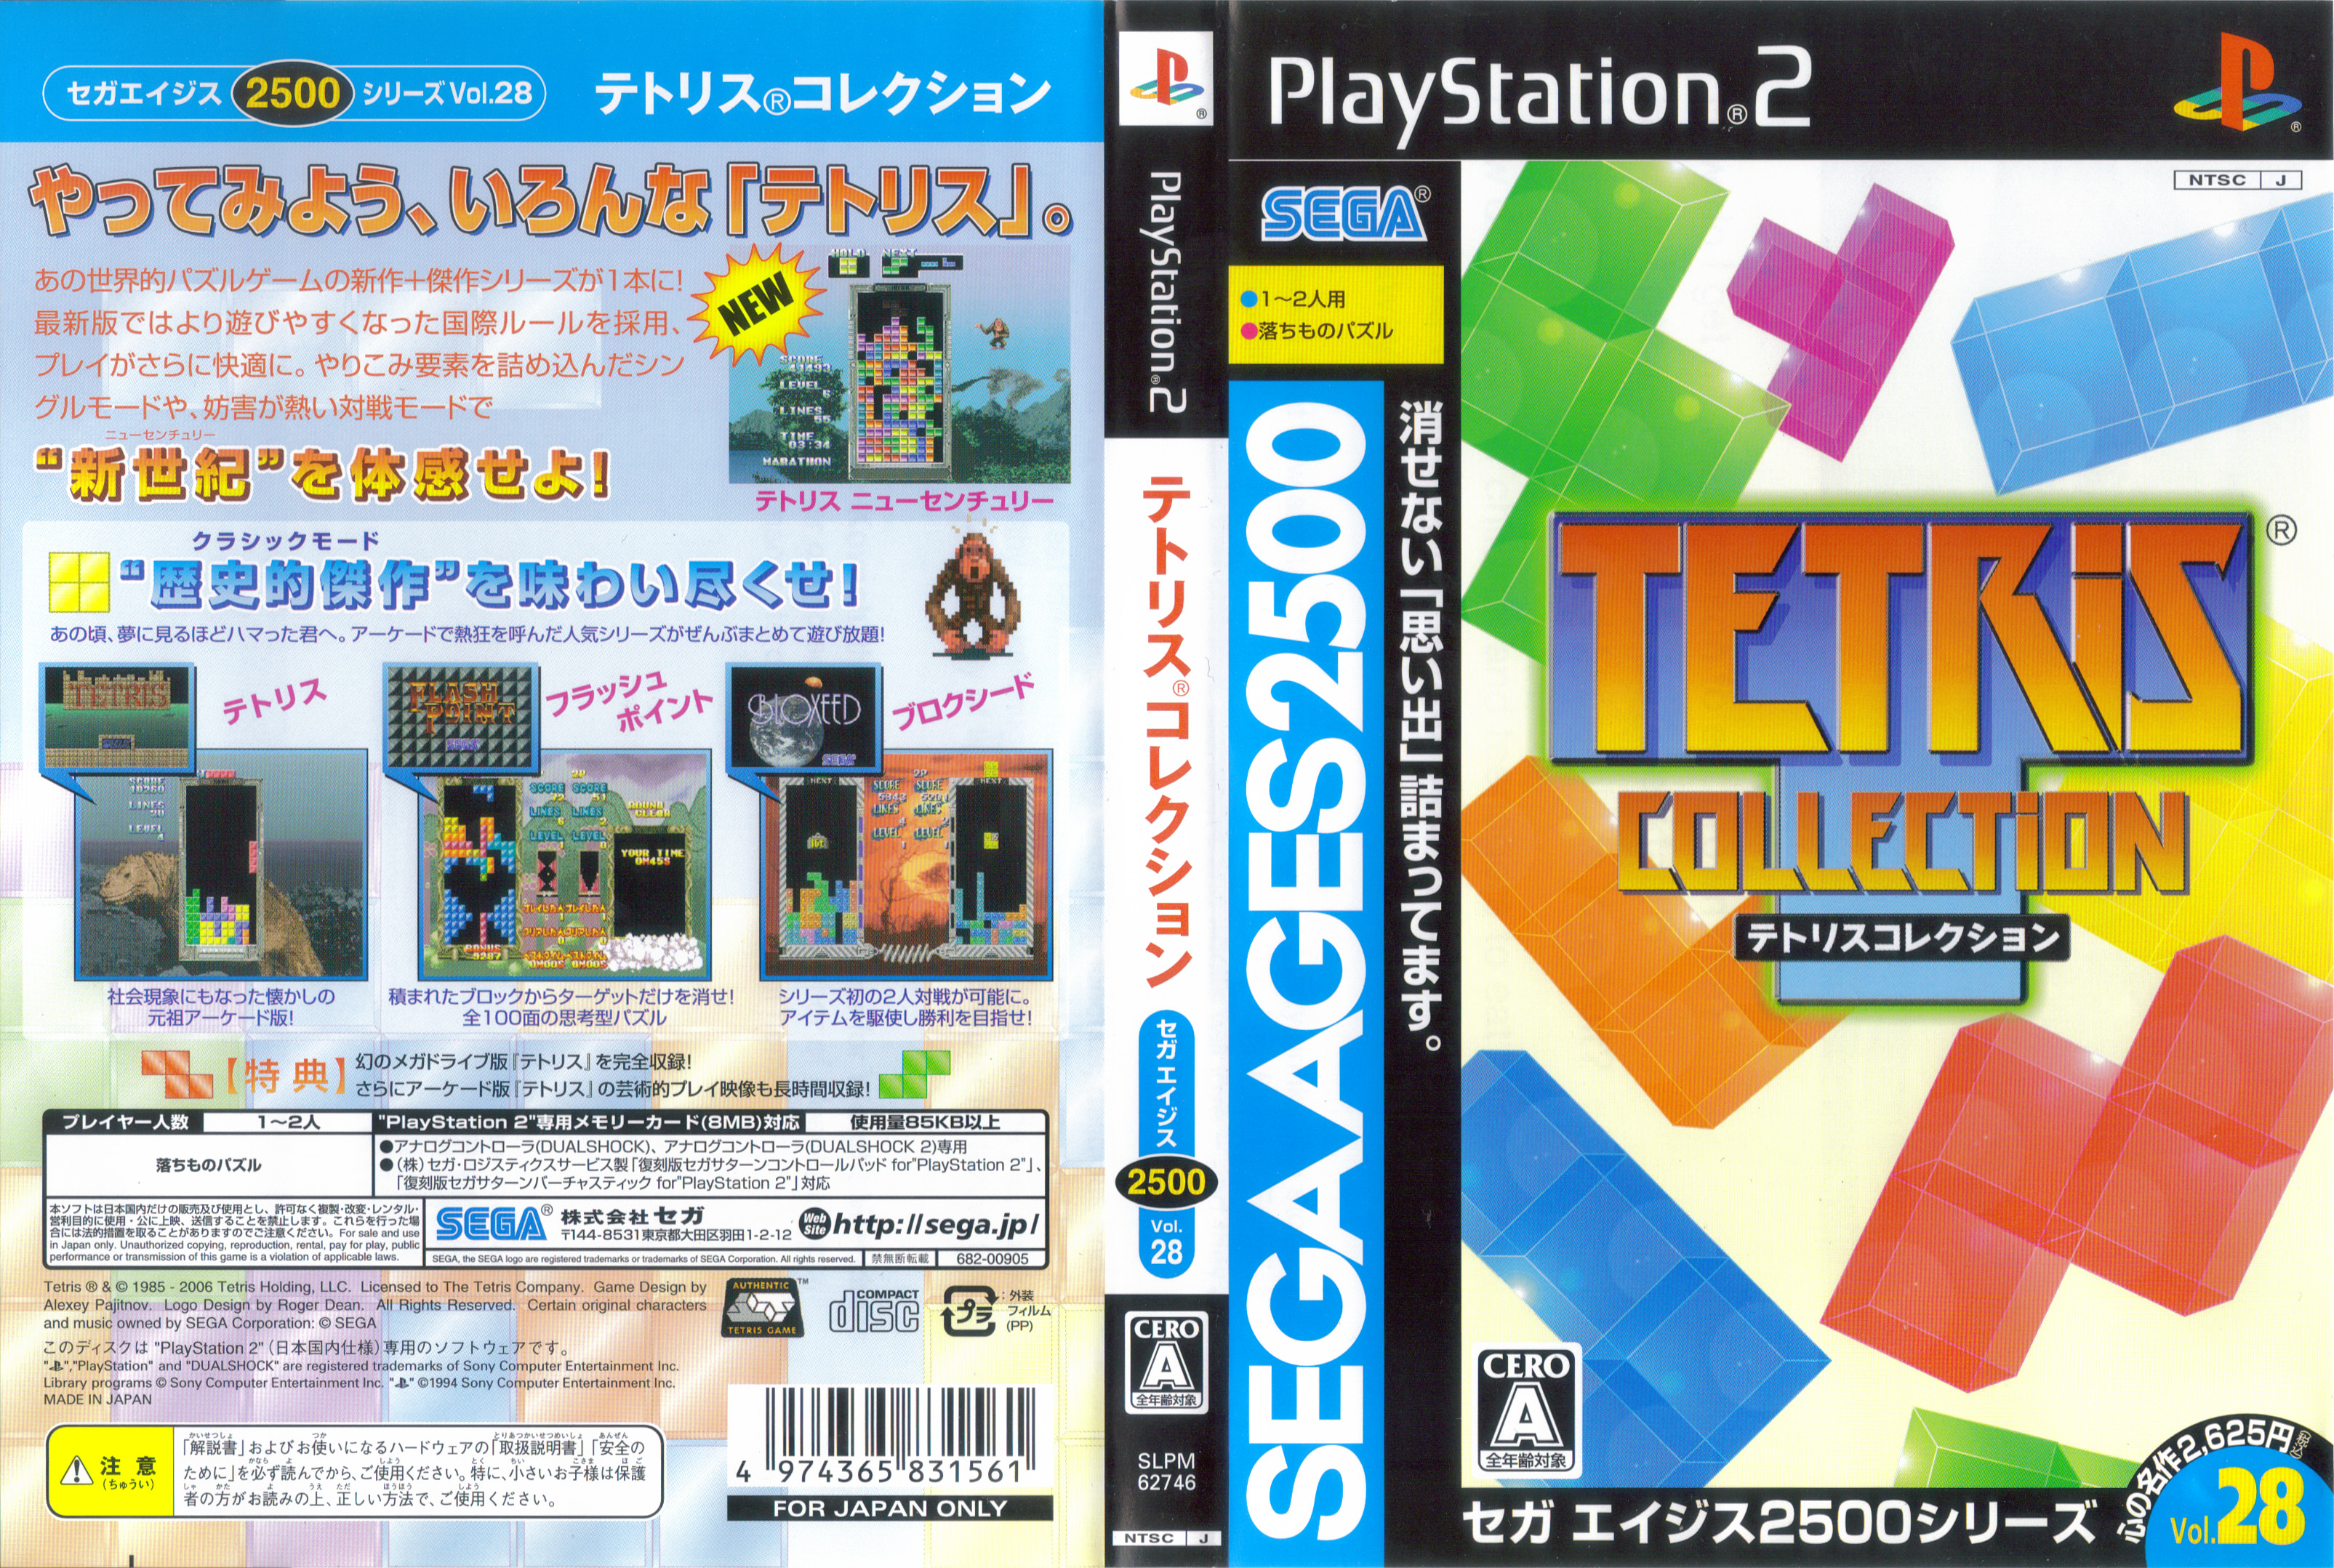 tetris collection